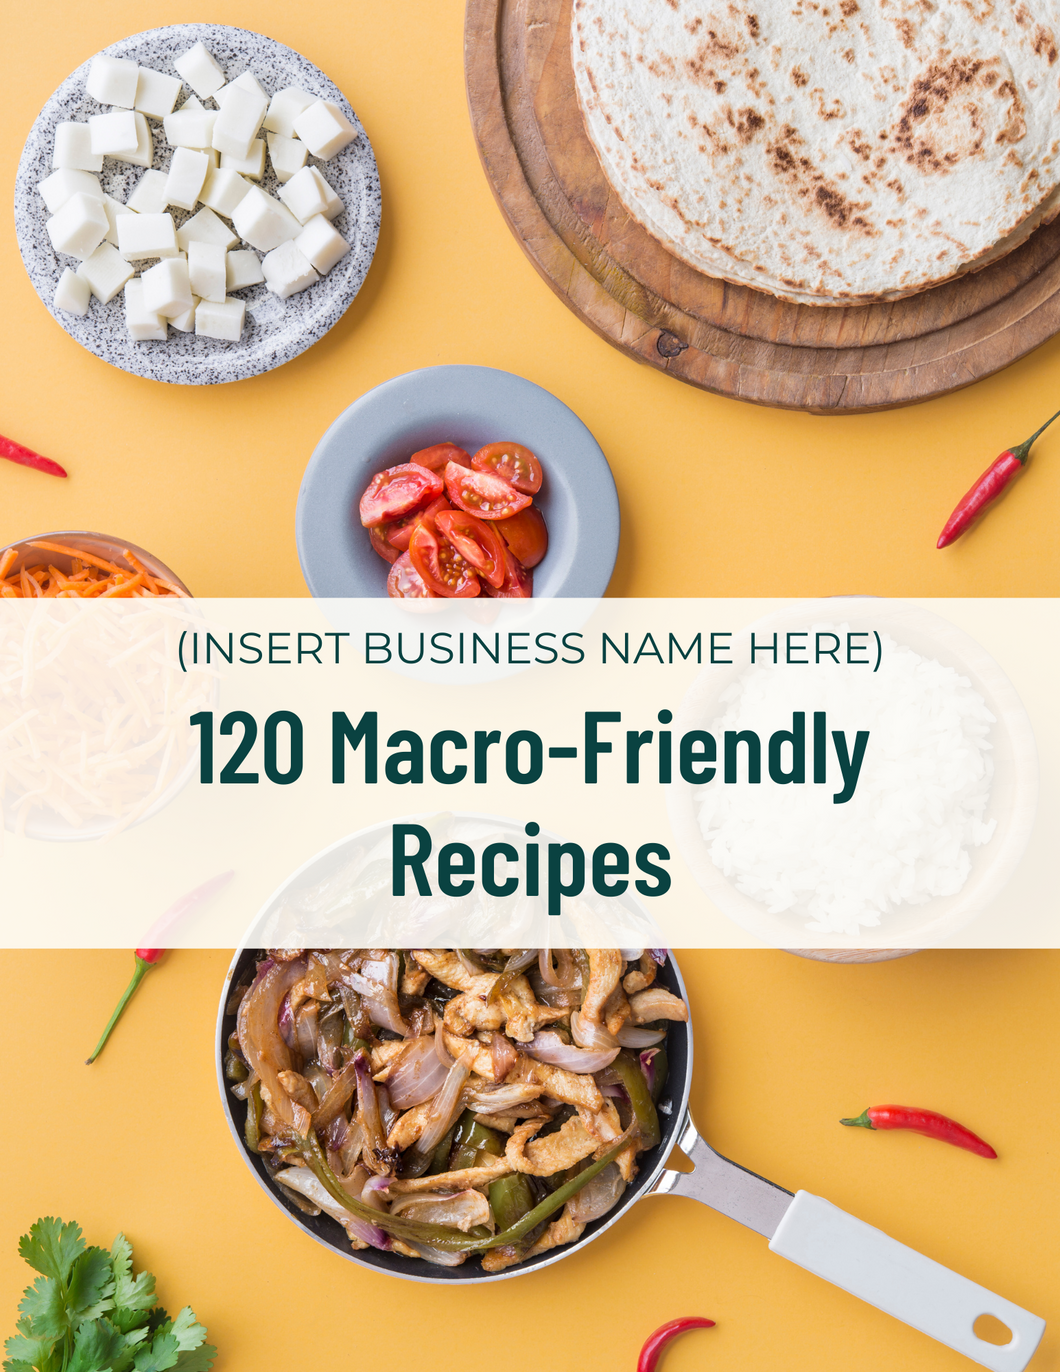 120 Macro-Friendly Recipes